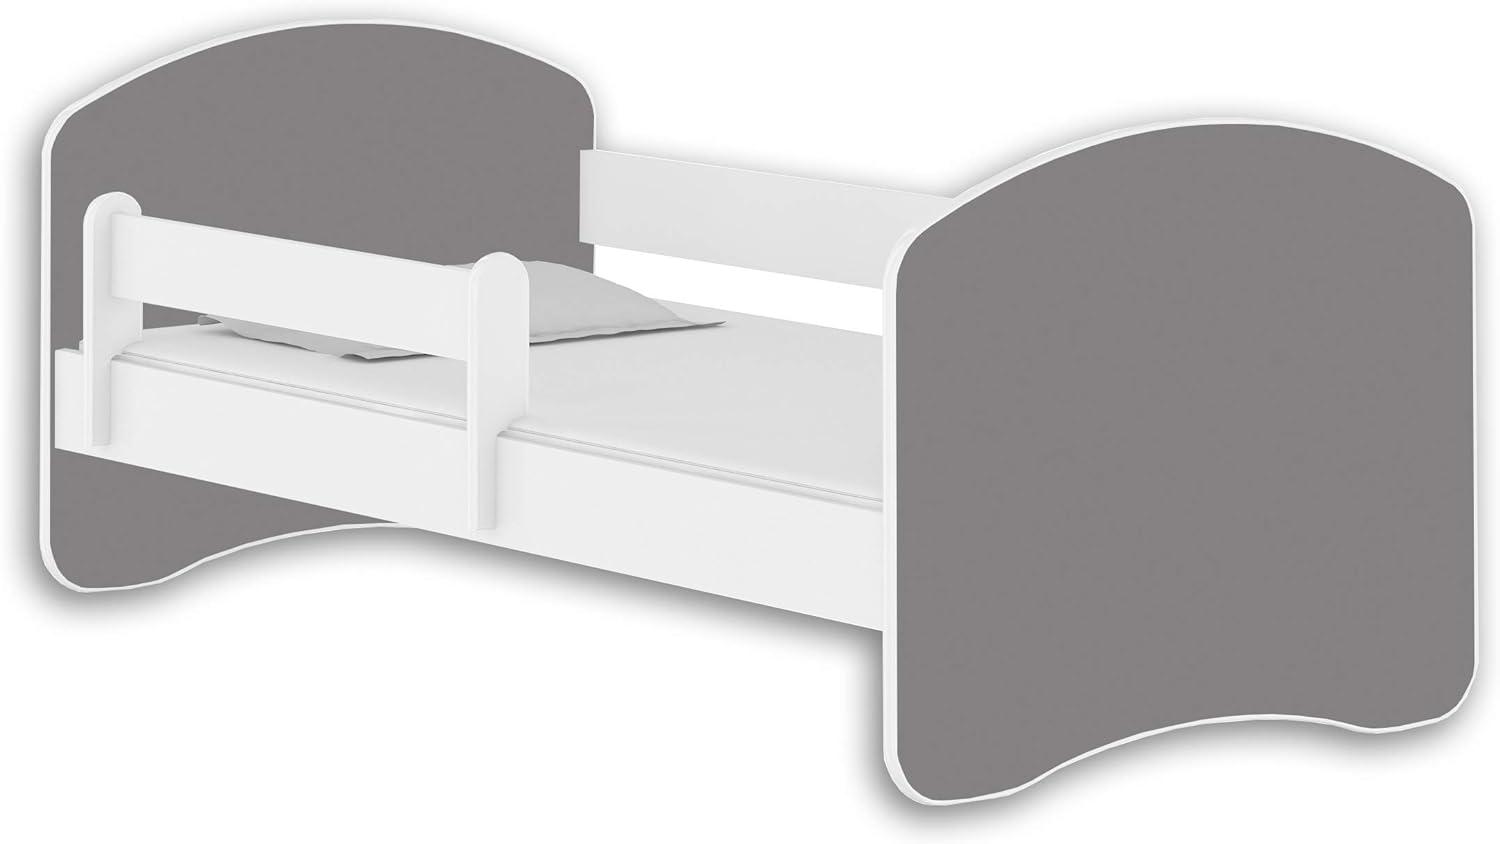 Jugendbett Kinderbett mit einer Schublade mit Rausfallschutz und Matratze Weiß ACMA II 140 160 180 (160x80 cm, Weiß - Grau) Bild 1